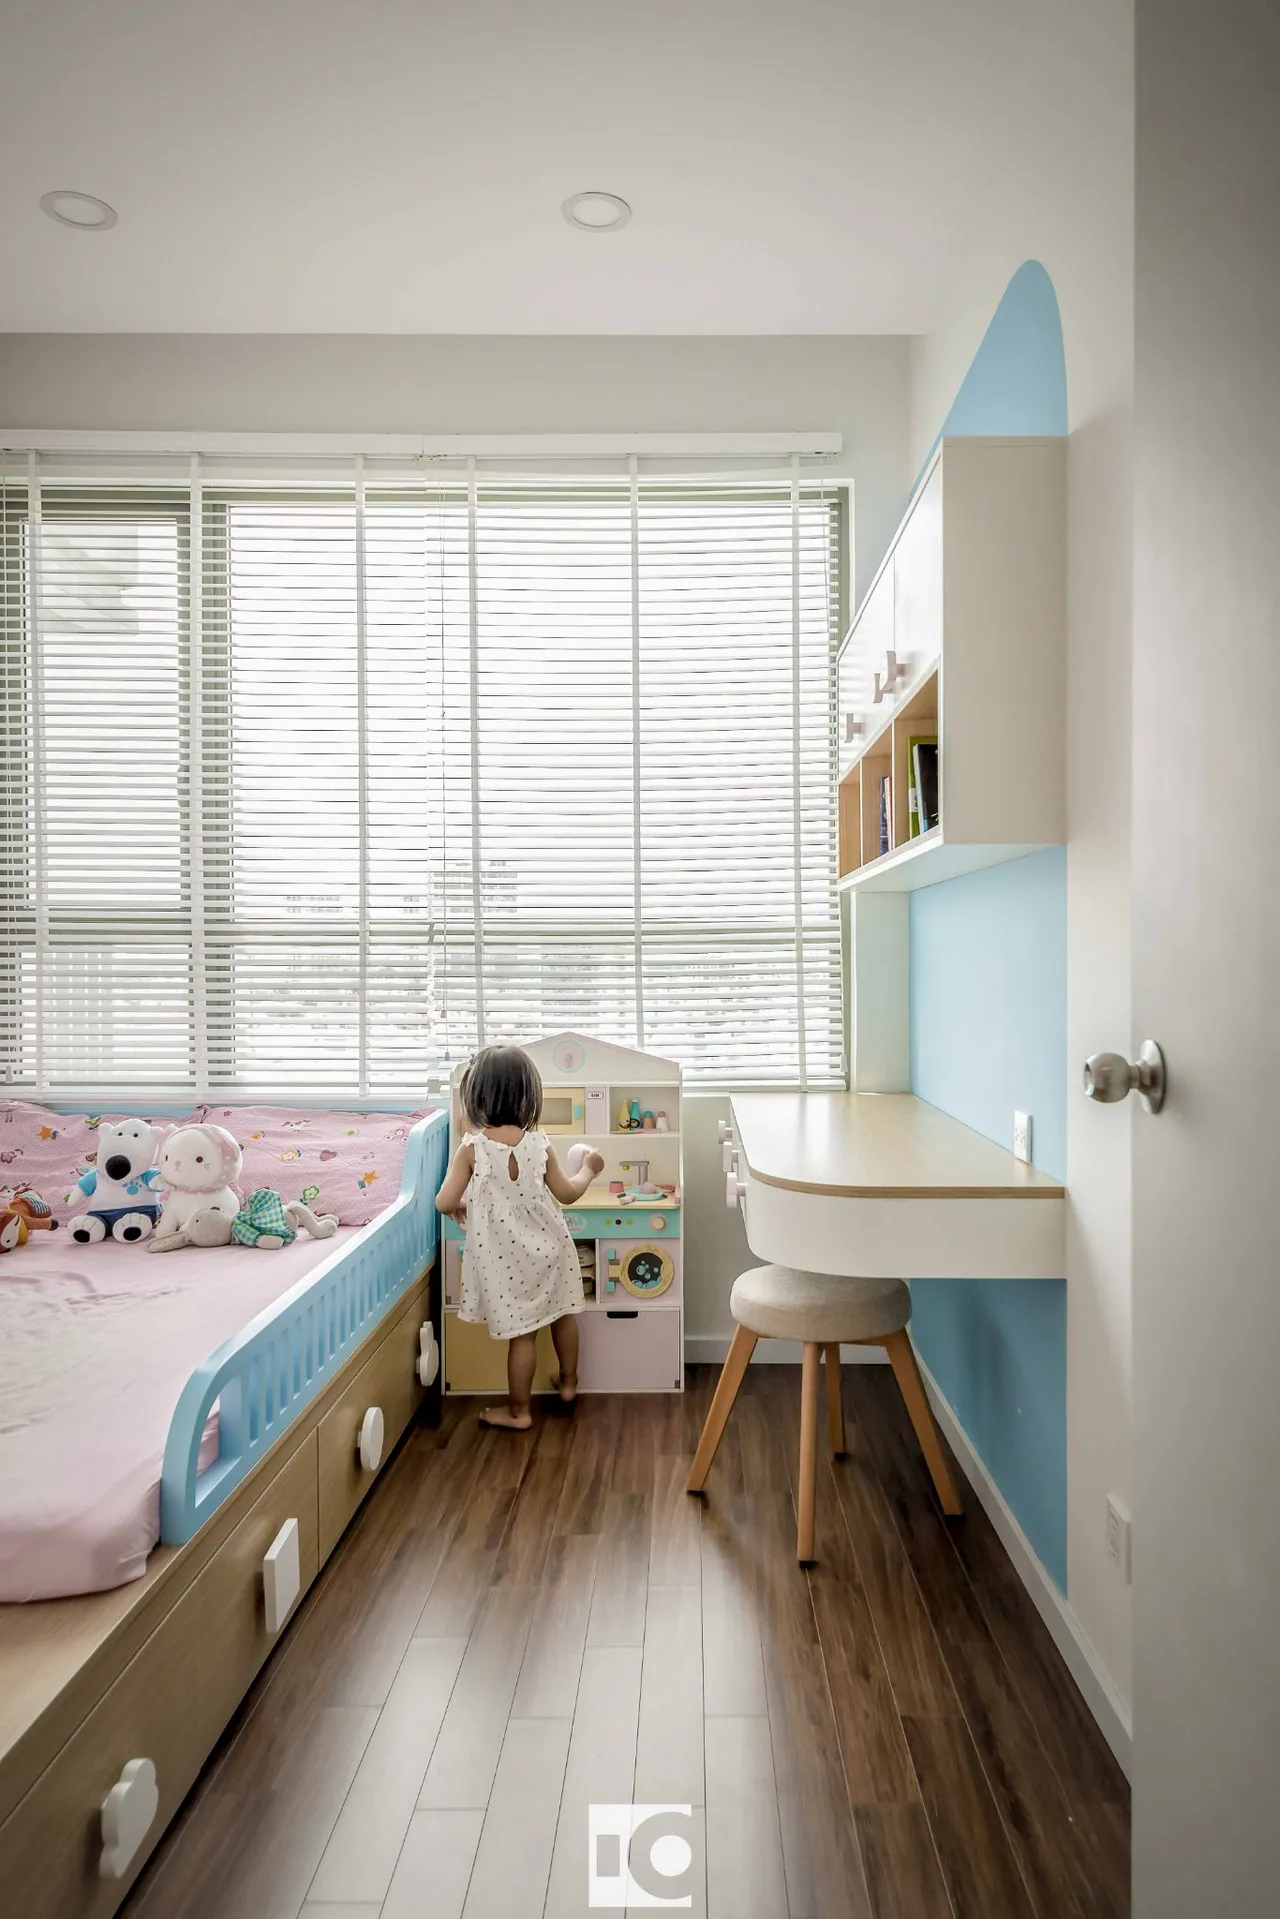 Hoàn thiện nội thất phòng ngủ cho bé Căn hộ The Riviera Point Quận 7 phong cách Tối giản Minimalist, phong cách Color Block